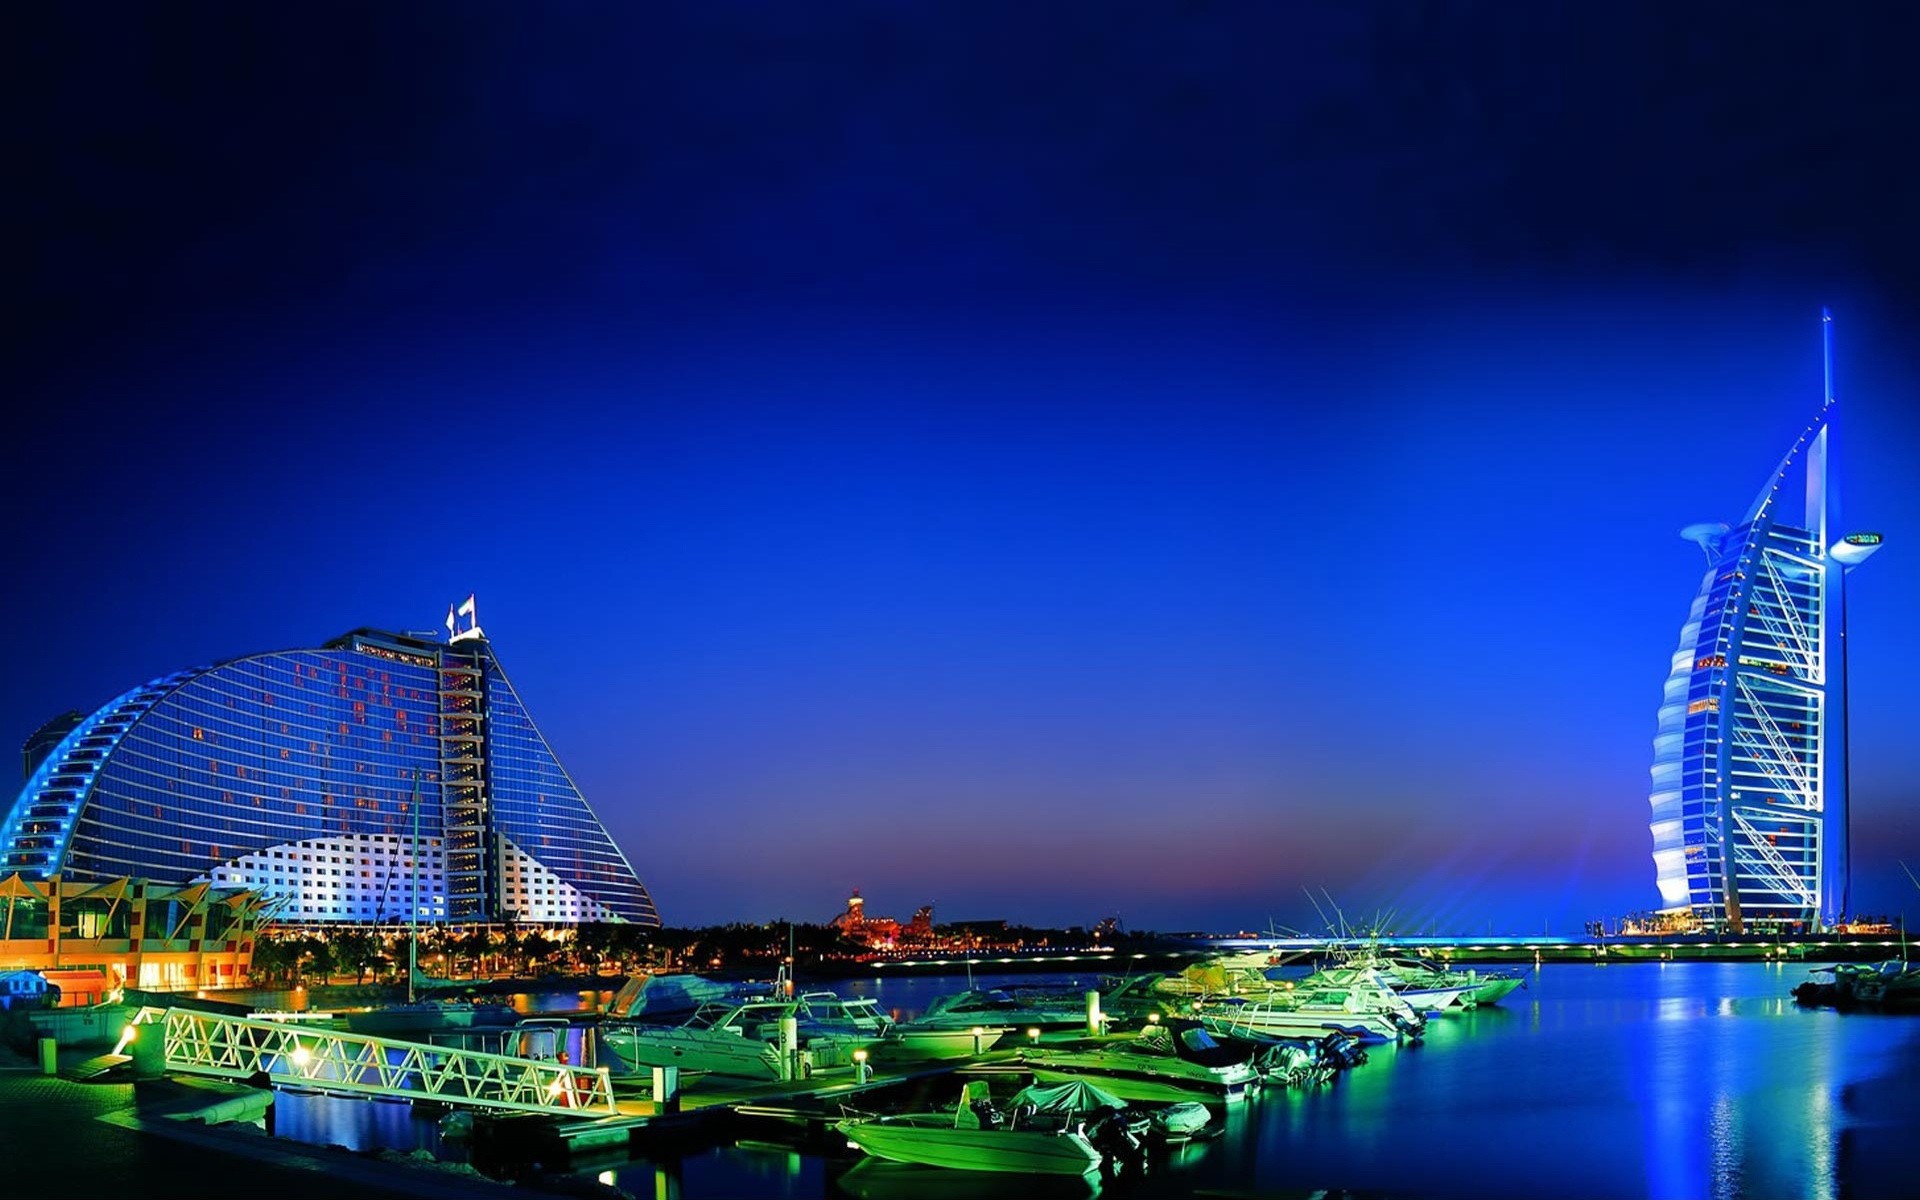 General 1920x1200 Dubai night boat hotel cityscape